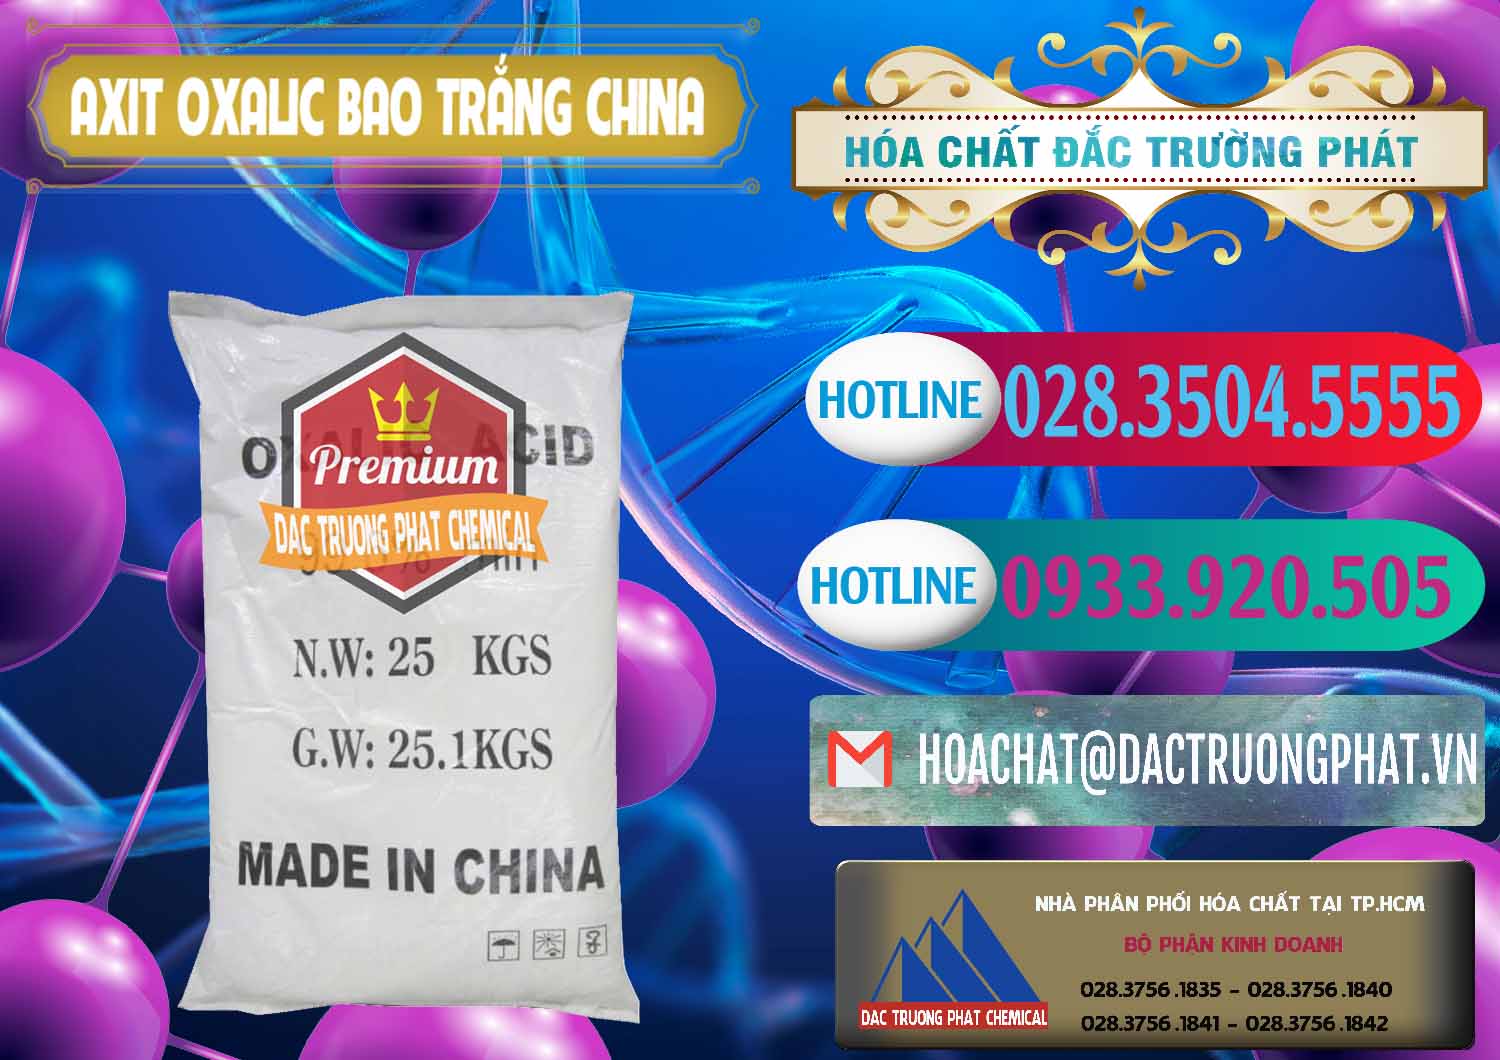 Bán - cung ứng Acid Oxalic – Axit Oxalic 99.6% Bao Trắng Trung Quốc China - 0270 - Cung cấp ( kinh doanh ) hóa chất tại TP.HCM - truongphat.vn